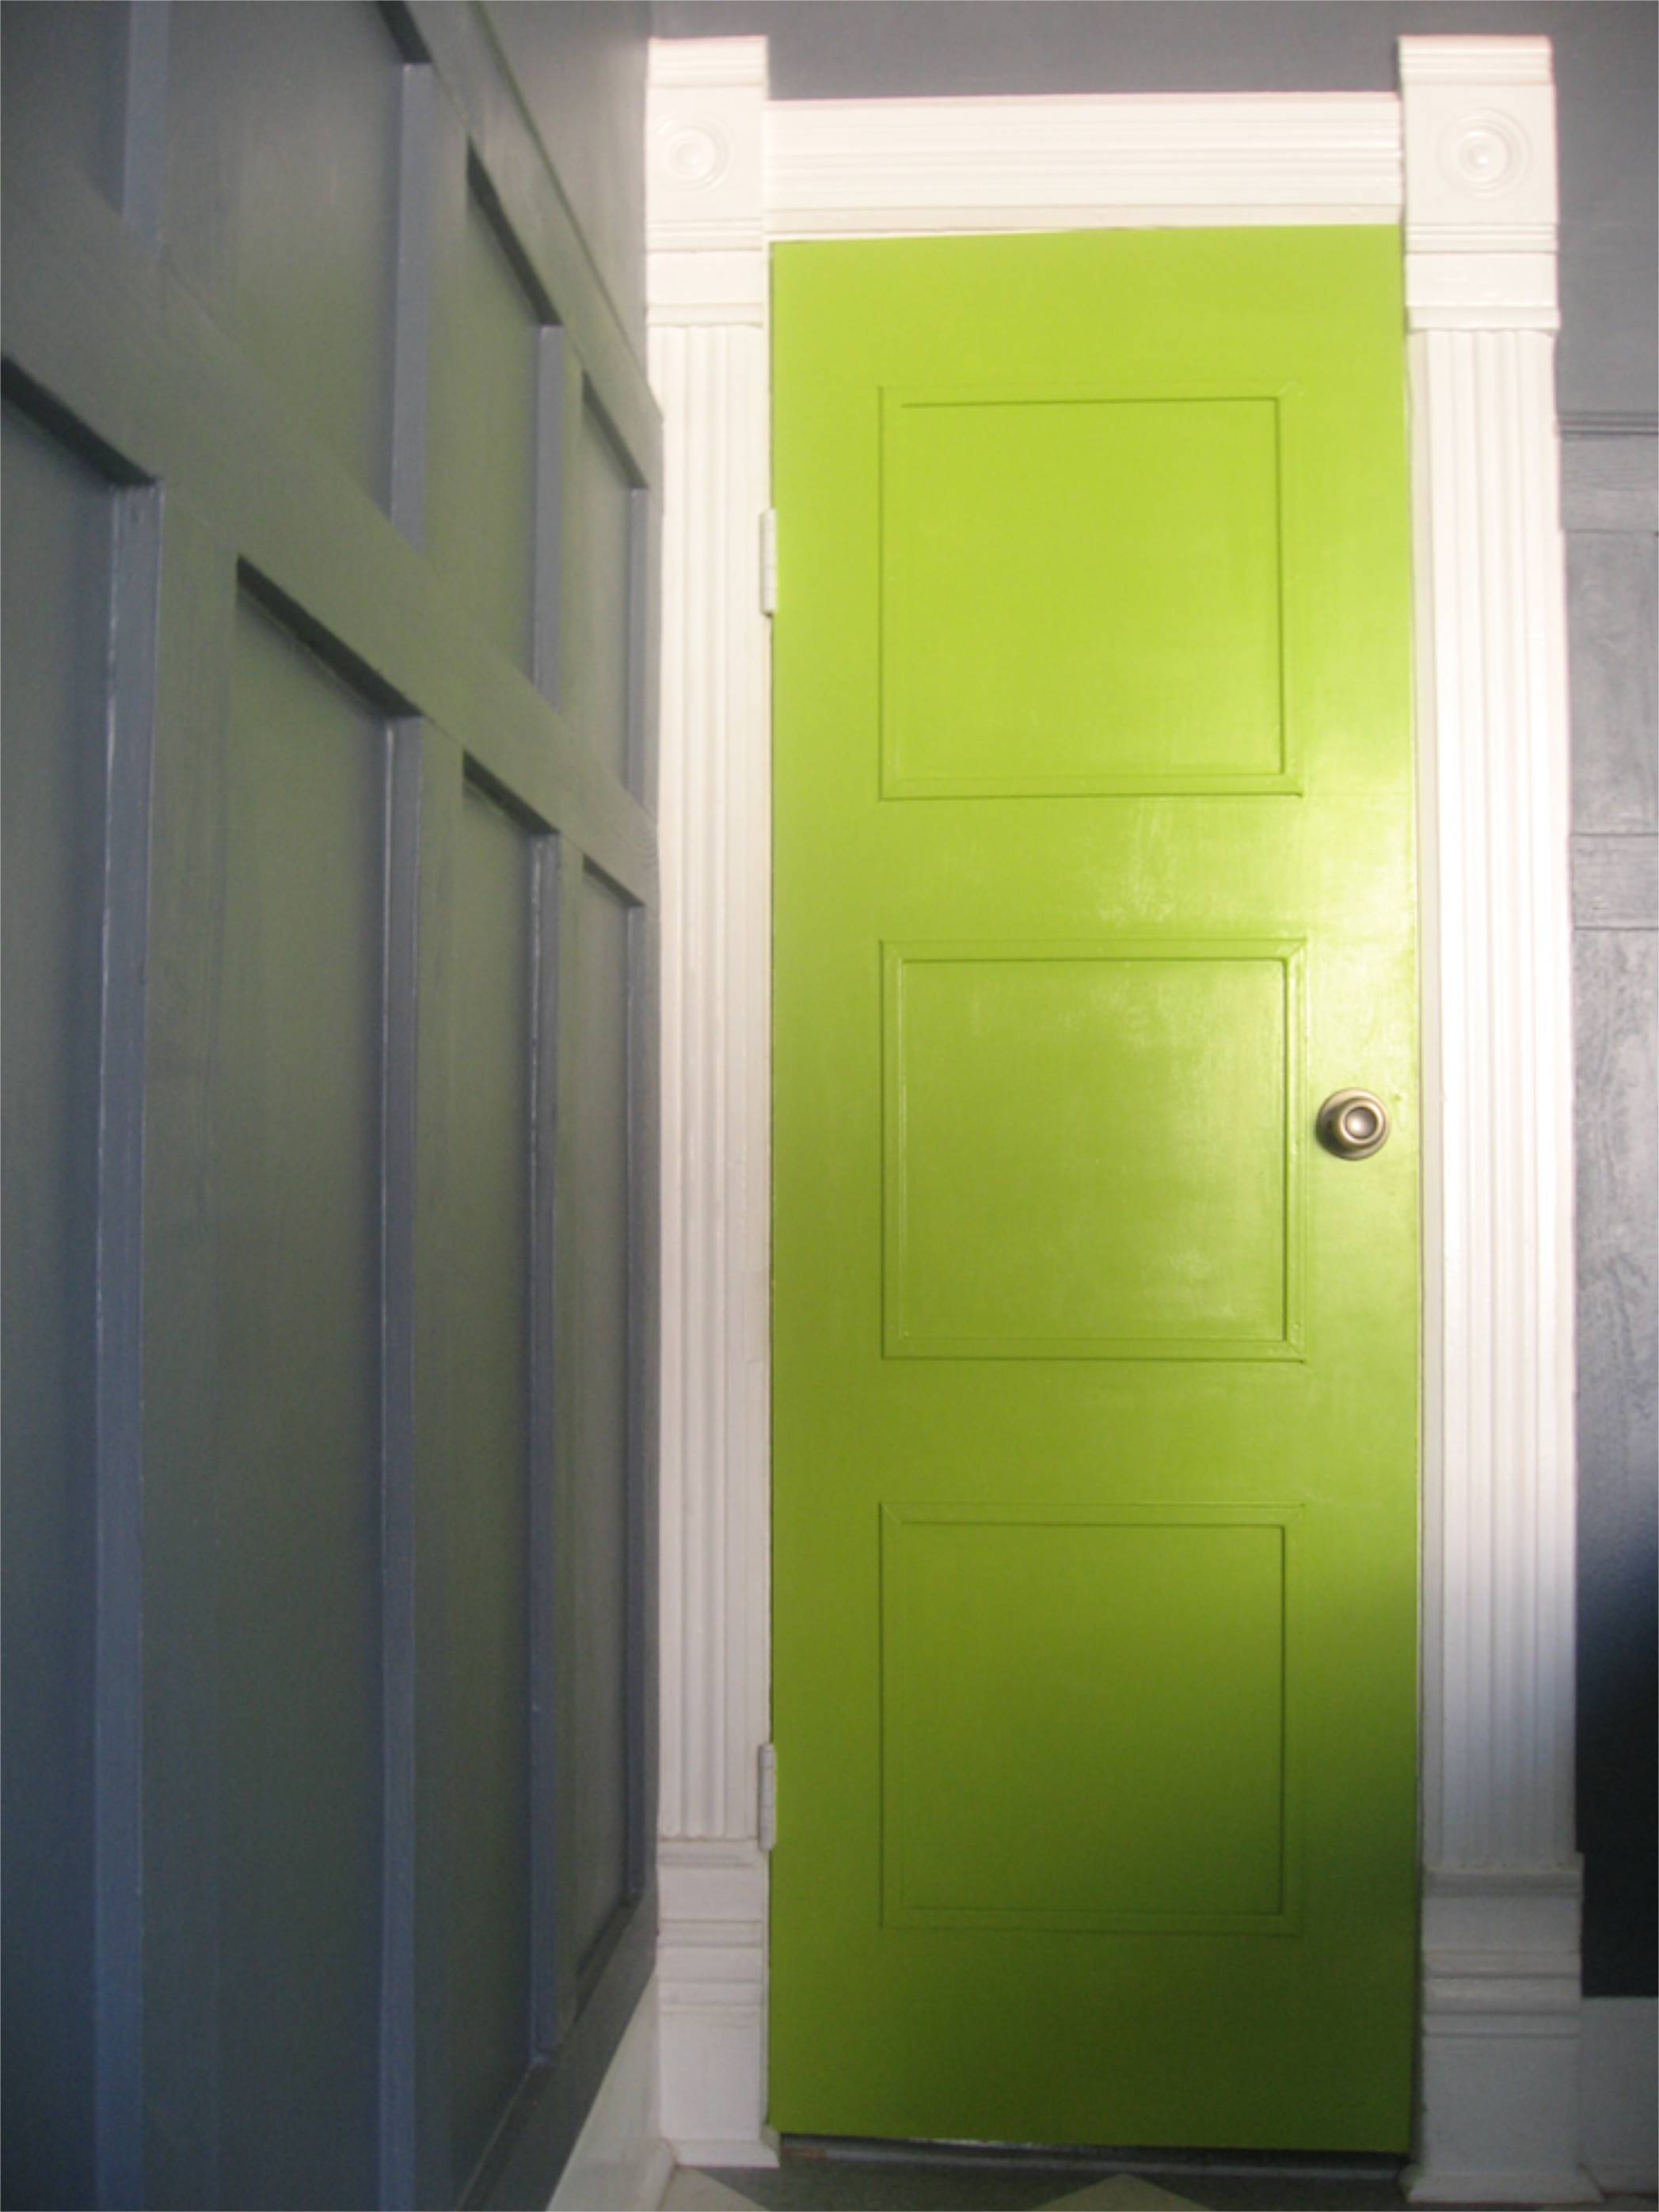 grey wainscoting chartreuse door